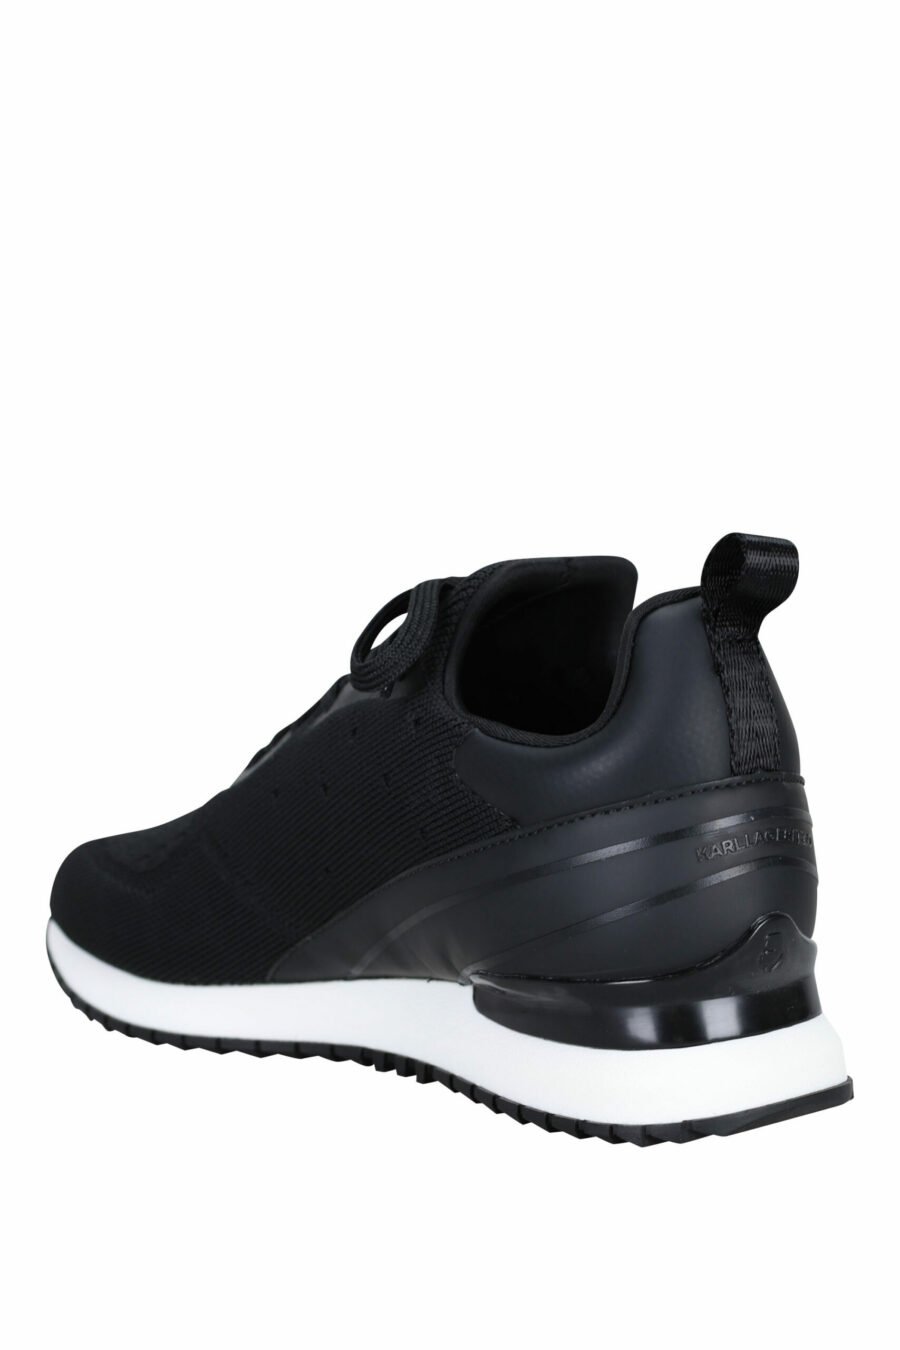 Sapatos "velocitor" pretos com logótipo "rue st guillaume" branco - 5059529326370 3 scaled